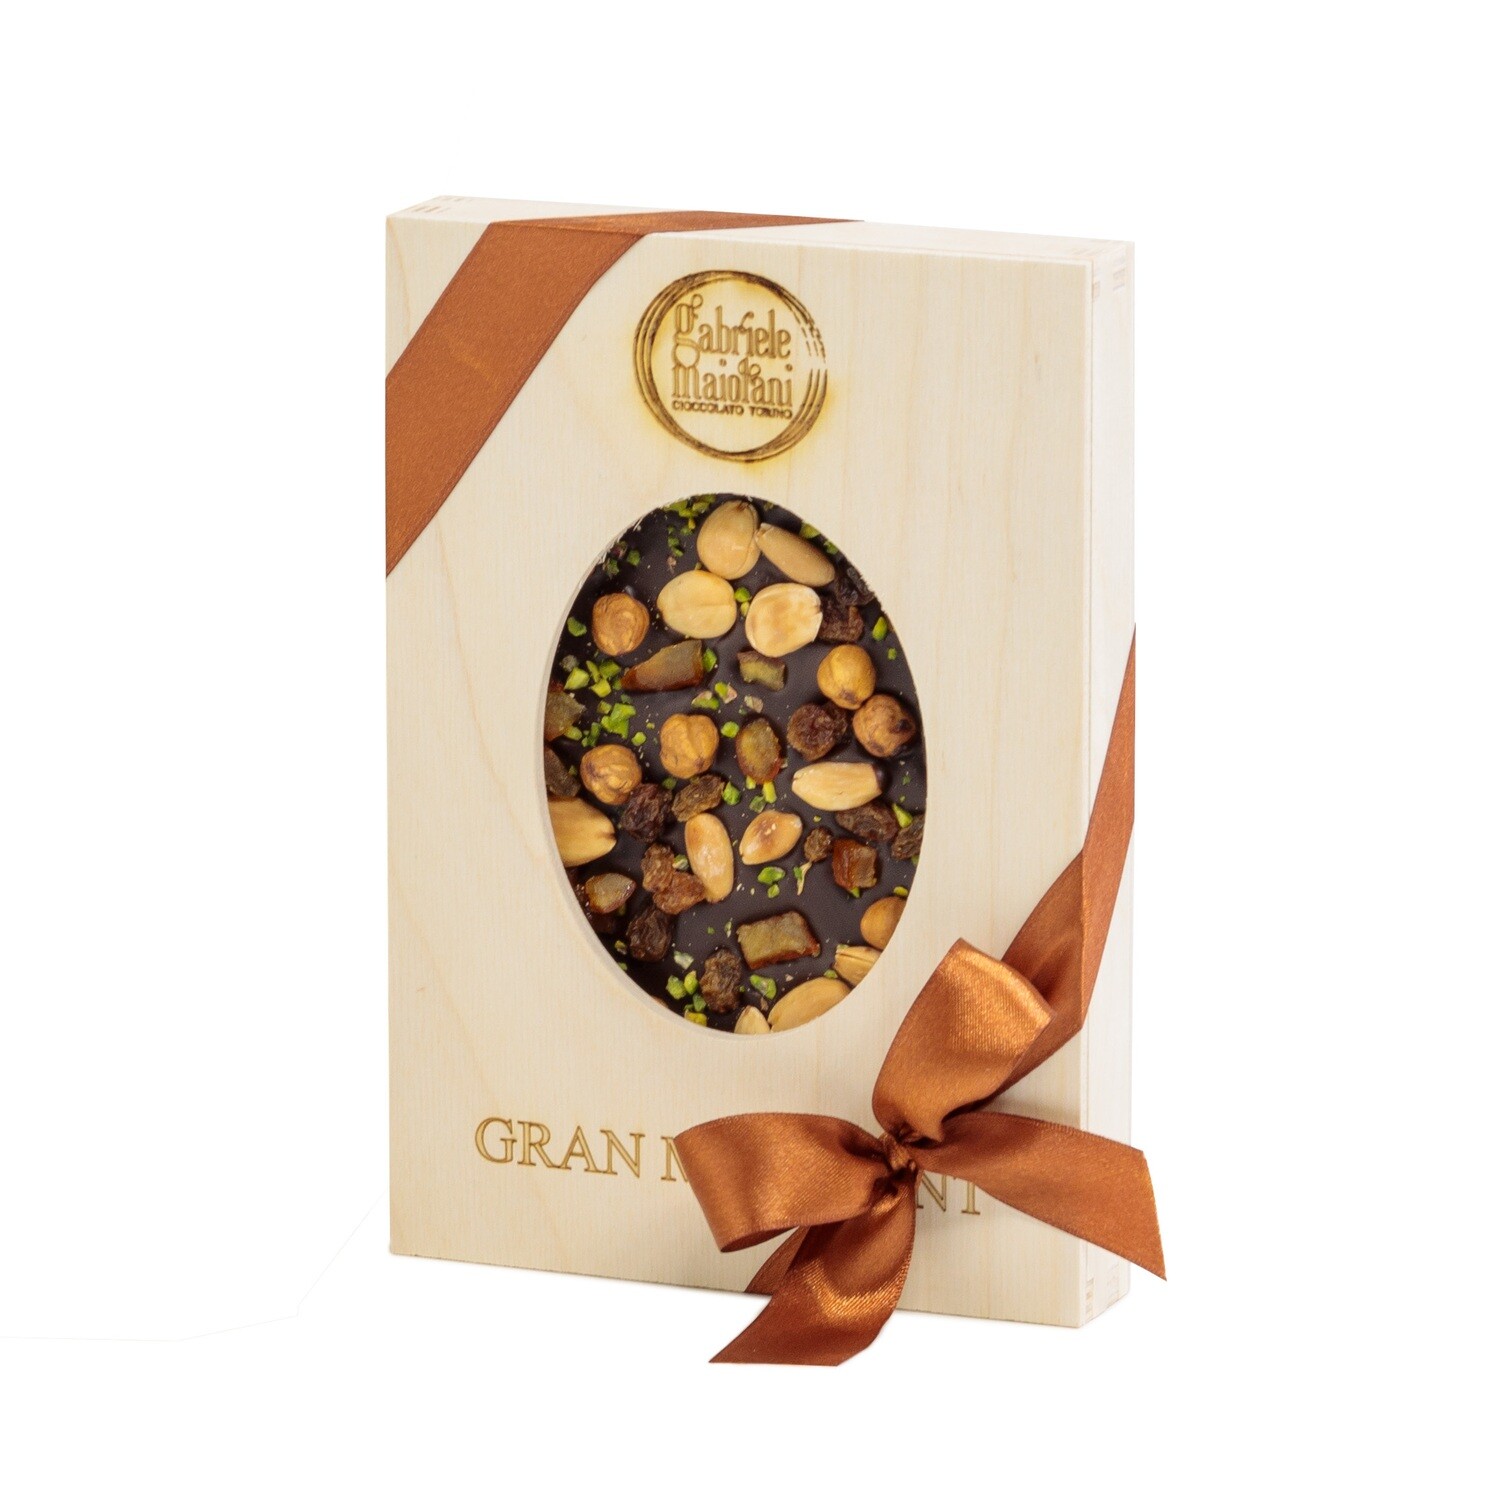 Tavoletta di cioccolato con frutta secca e candita "GRAN MENDIANT" 500g